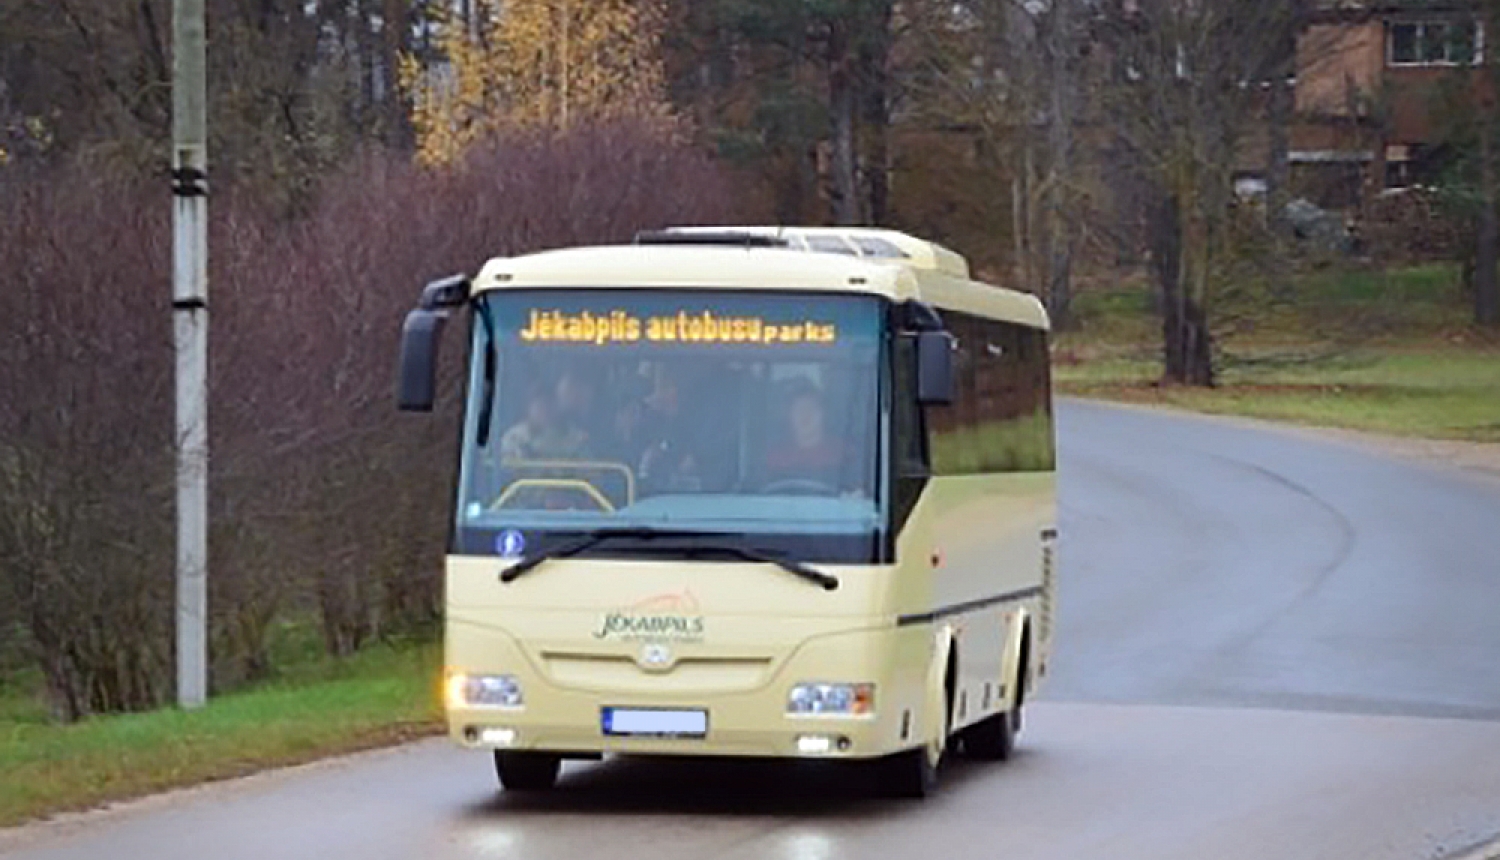 SIA Jēkabpils autobusu parks autobuss brauc pa ielu pretī fotogrāfam